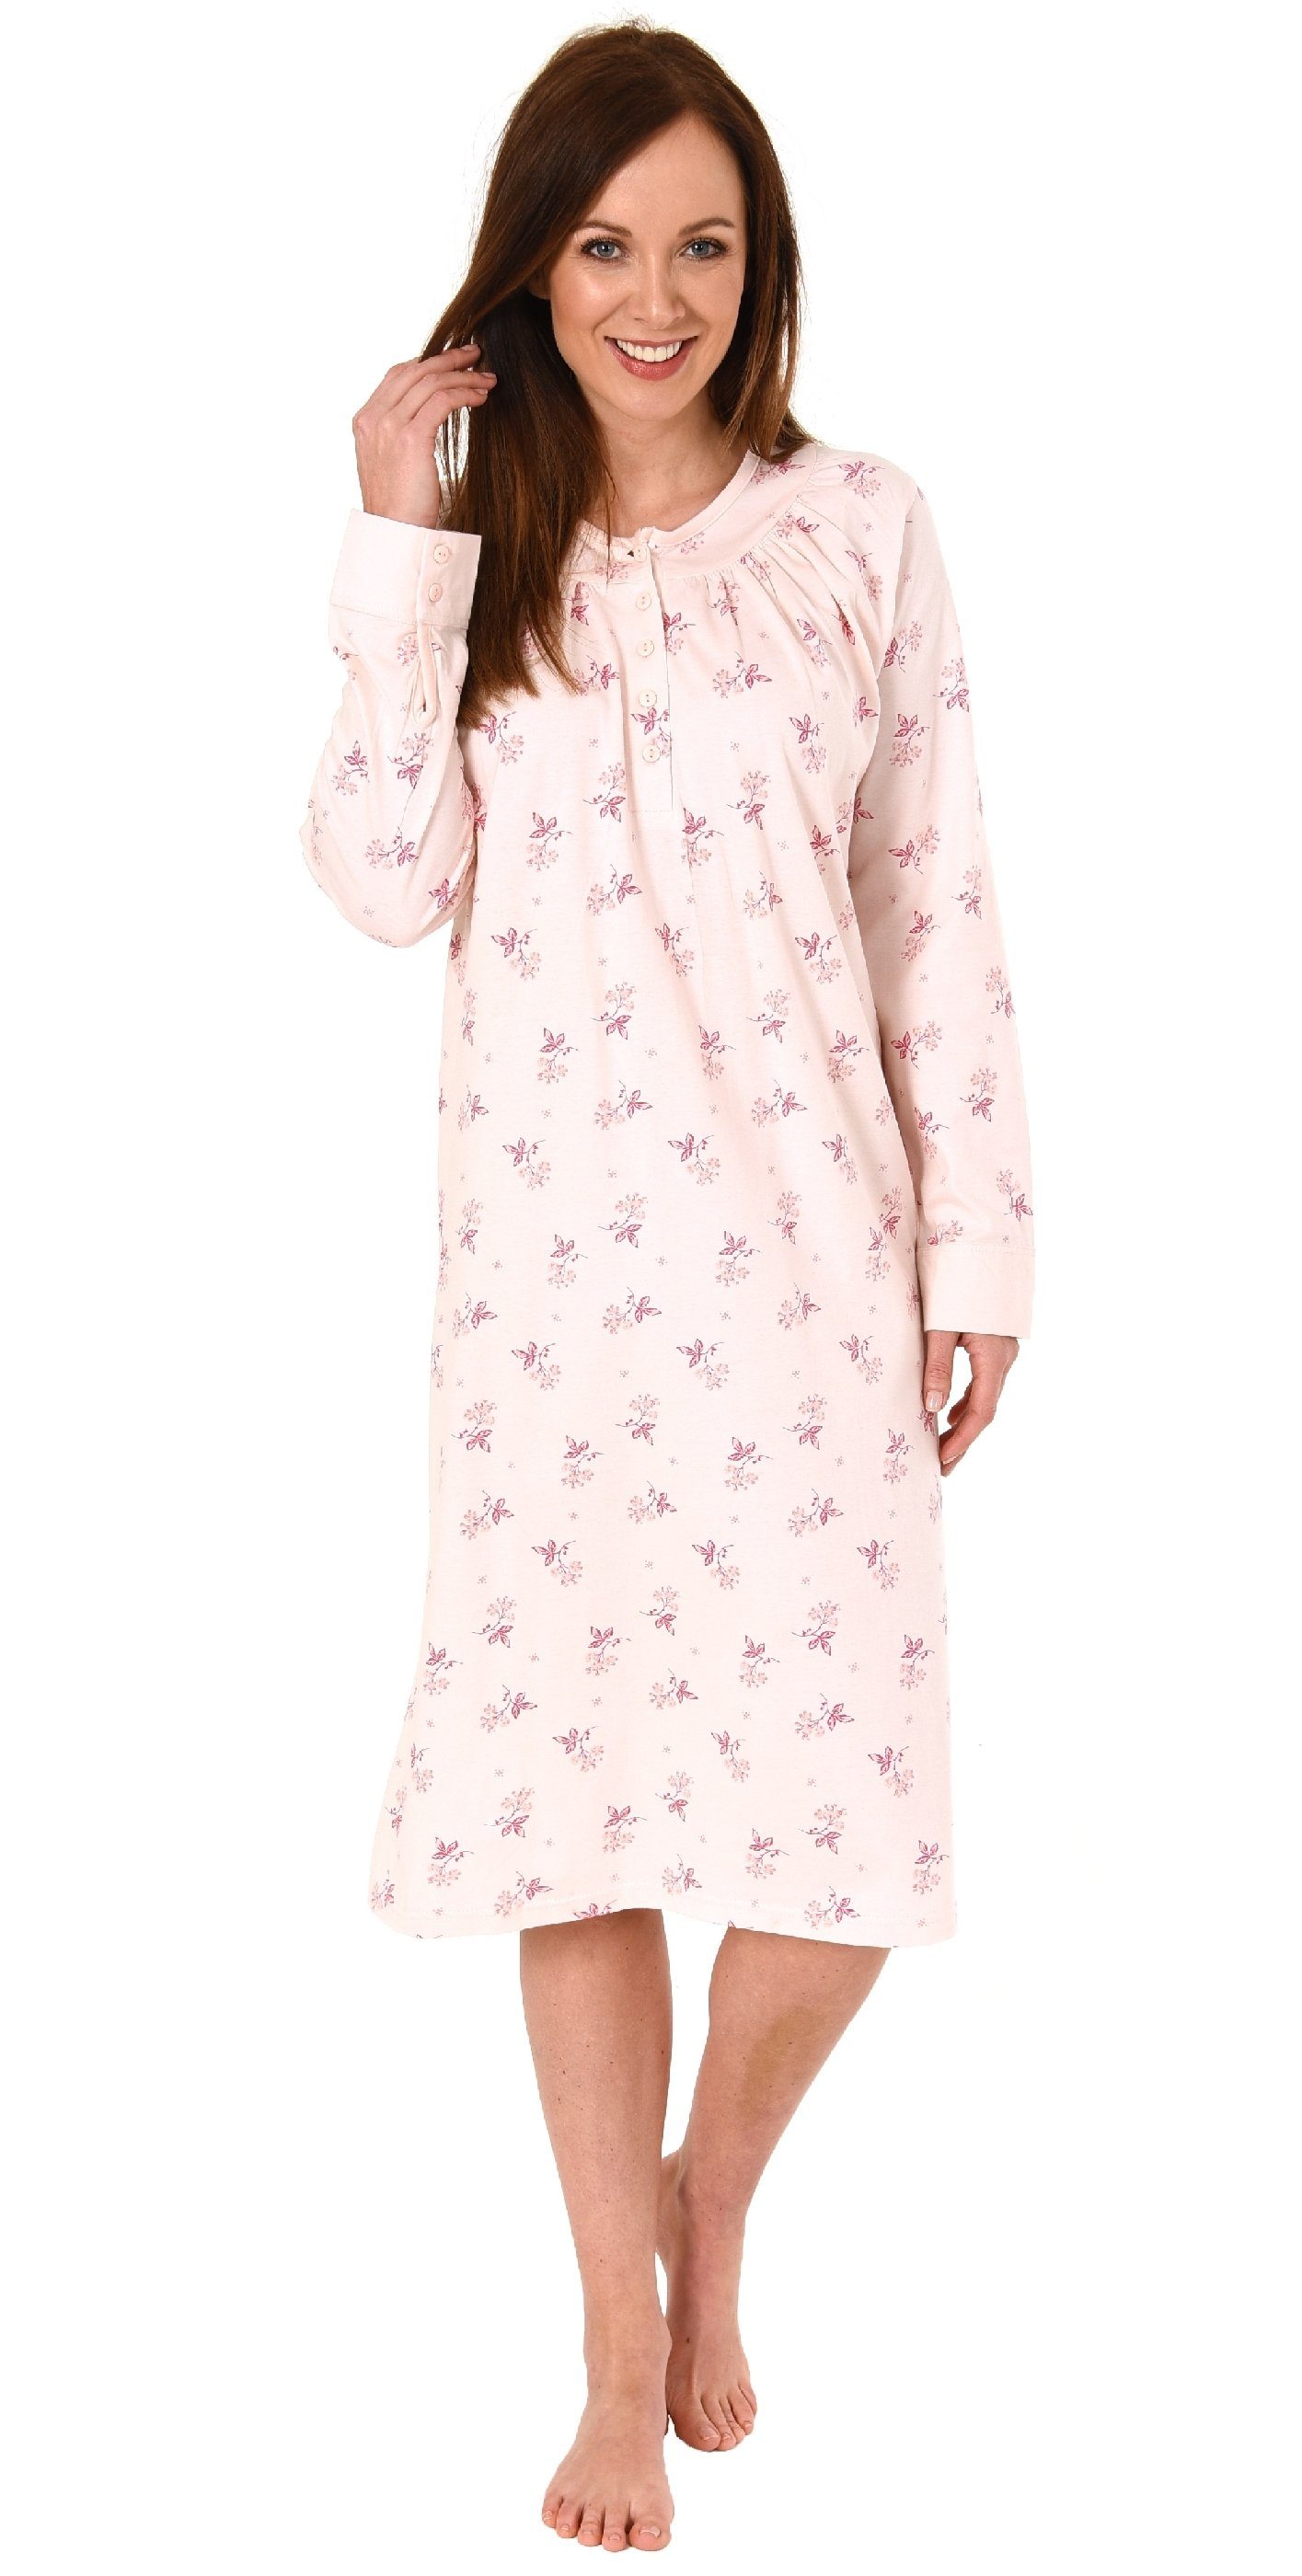 Normann Nachthemd Damen Nachthemd mit cm Länge und Kopfleiste am Hals - 291 190 rosa